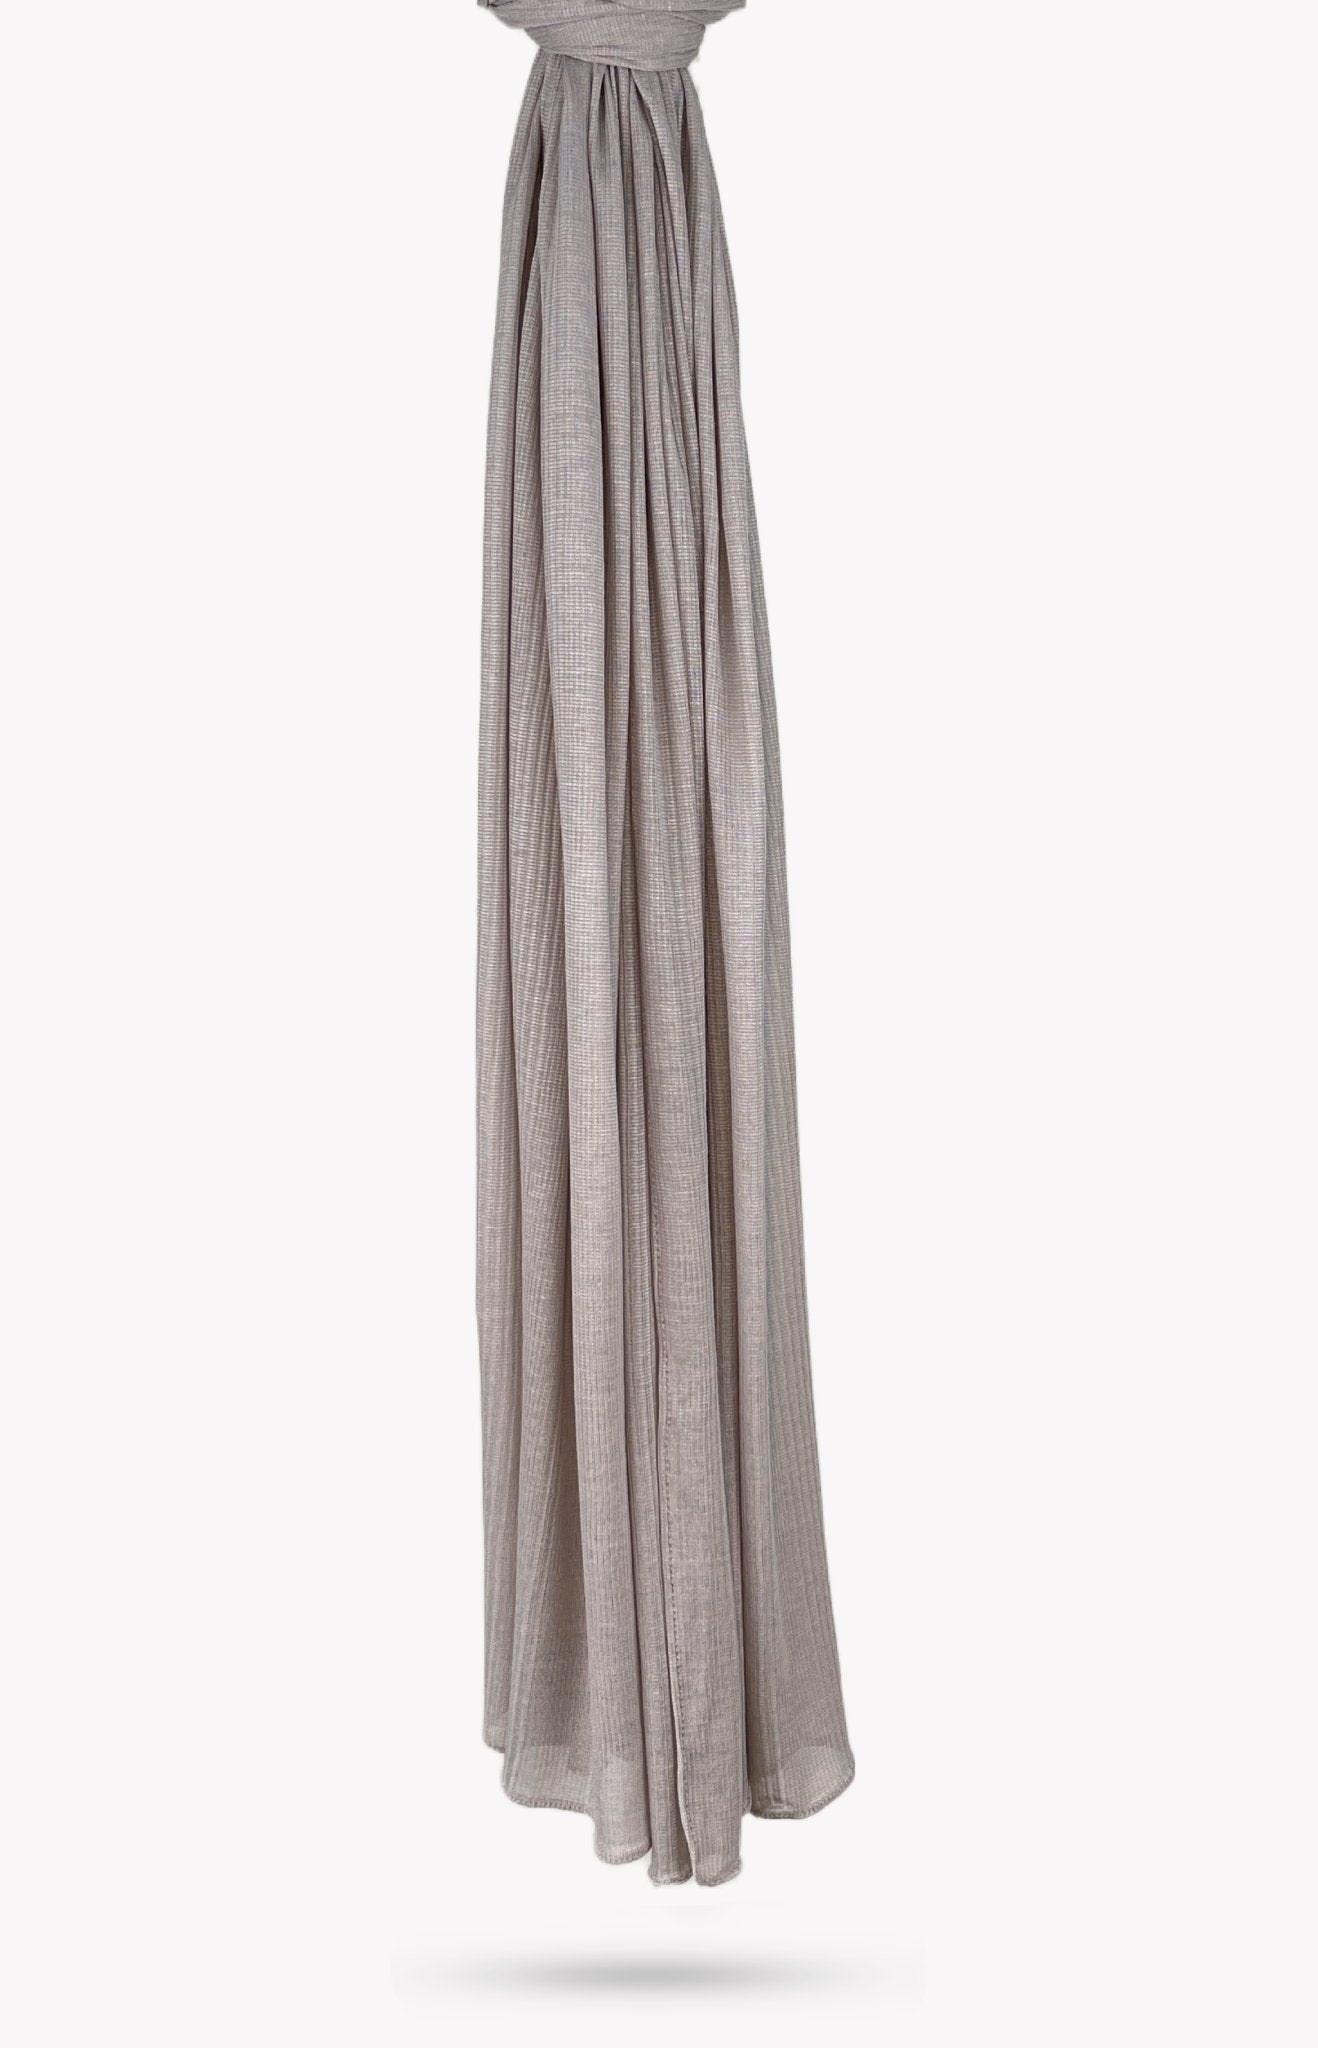 Warm Gray Fine Striped Jersey Hijab - Modesty Box